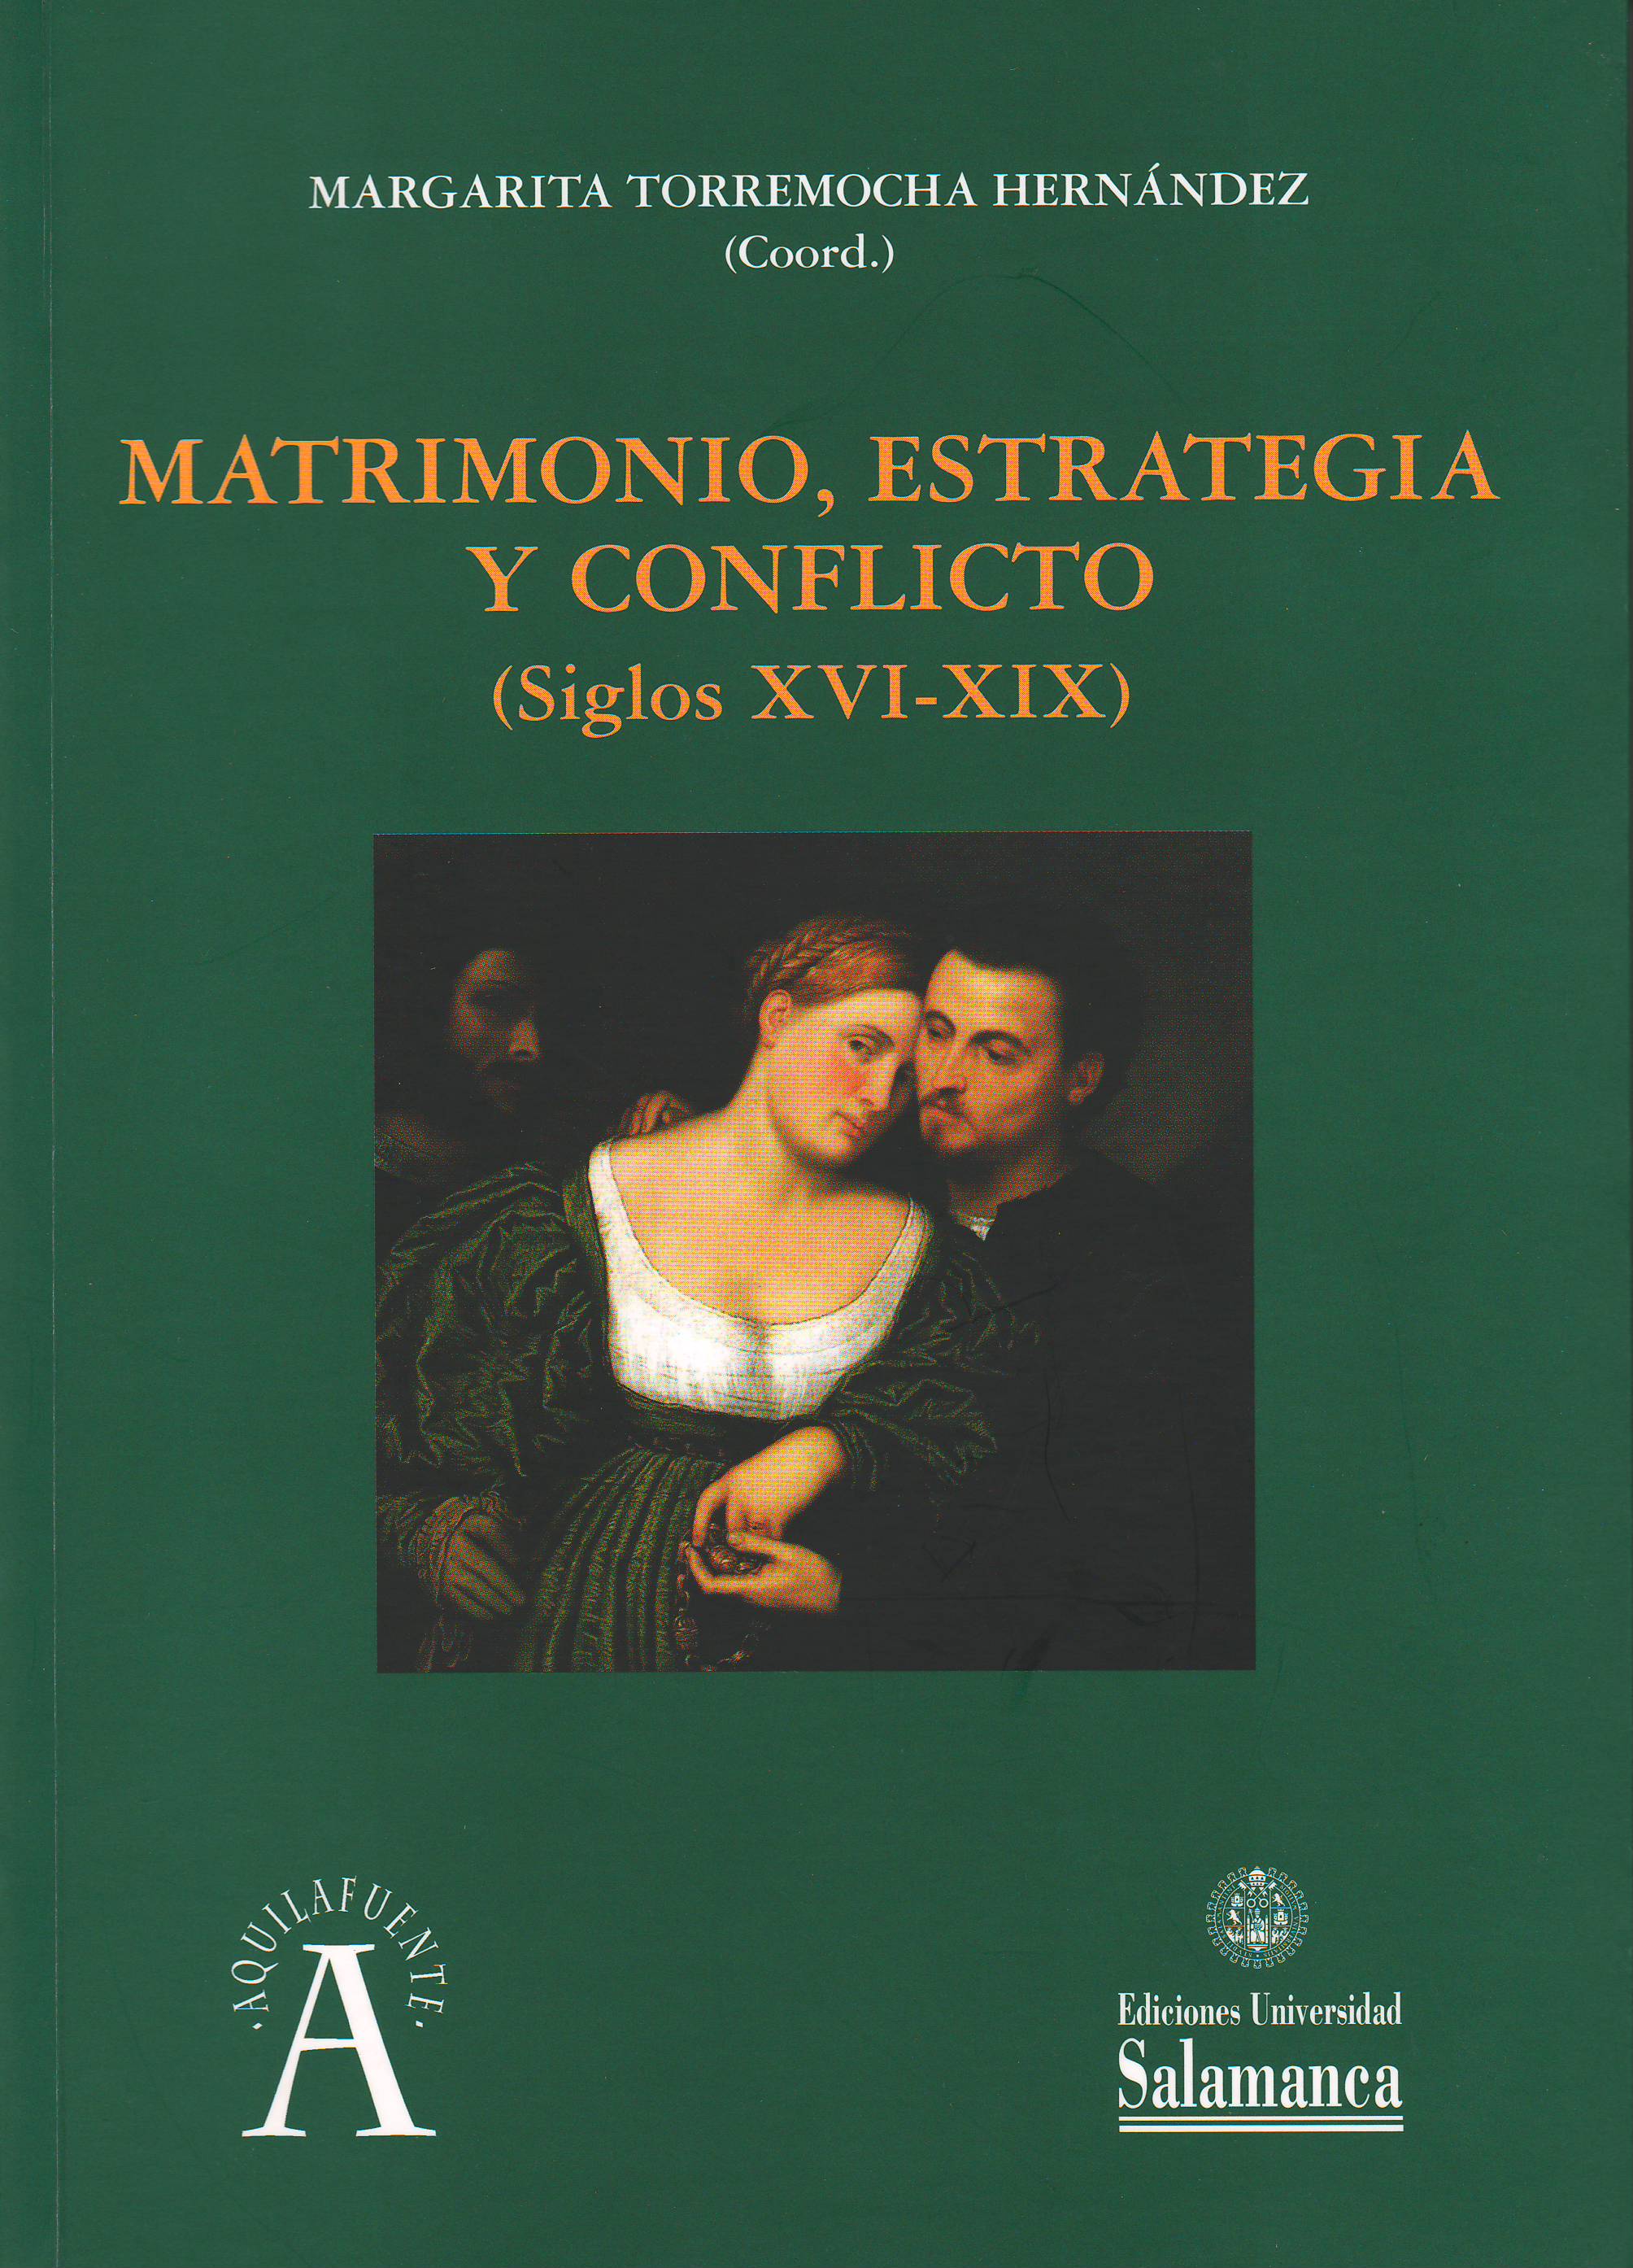 Imagen de portada del libro Matrimonio, estrategia y conflicto